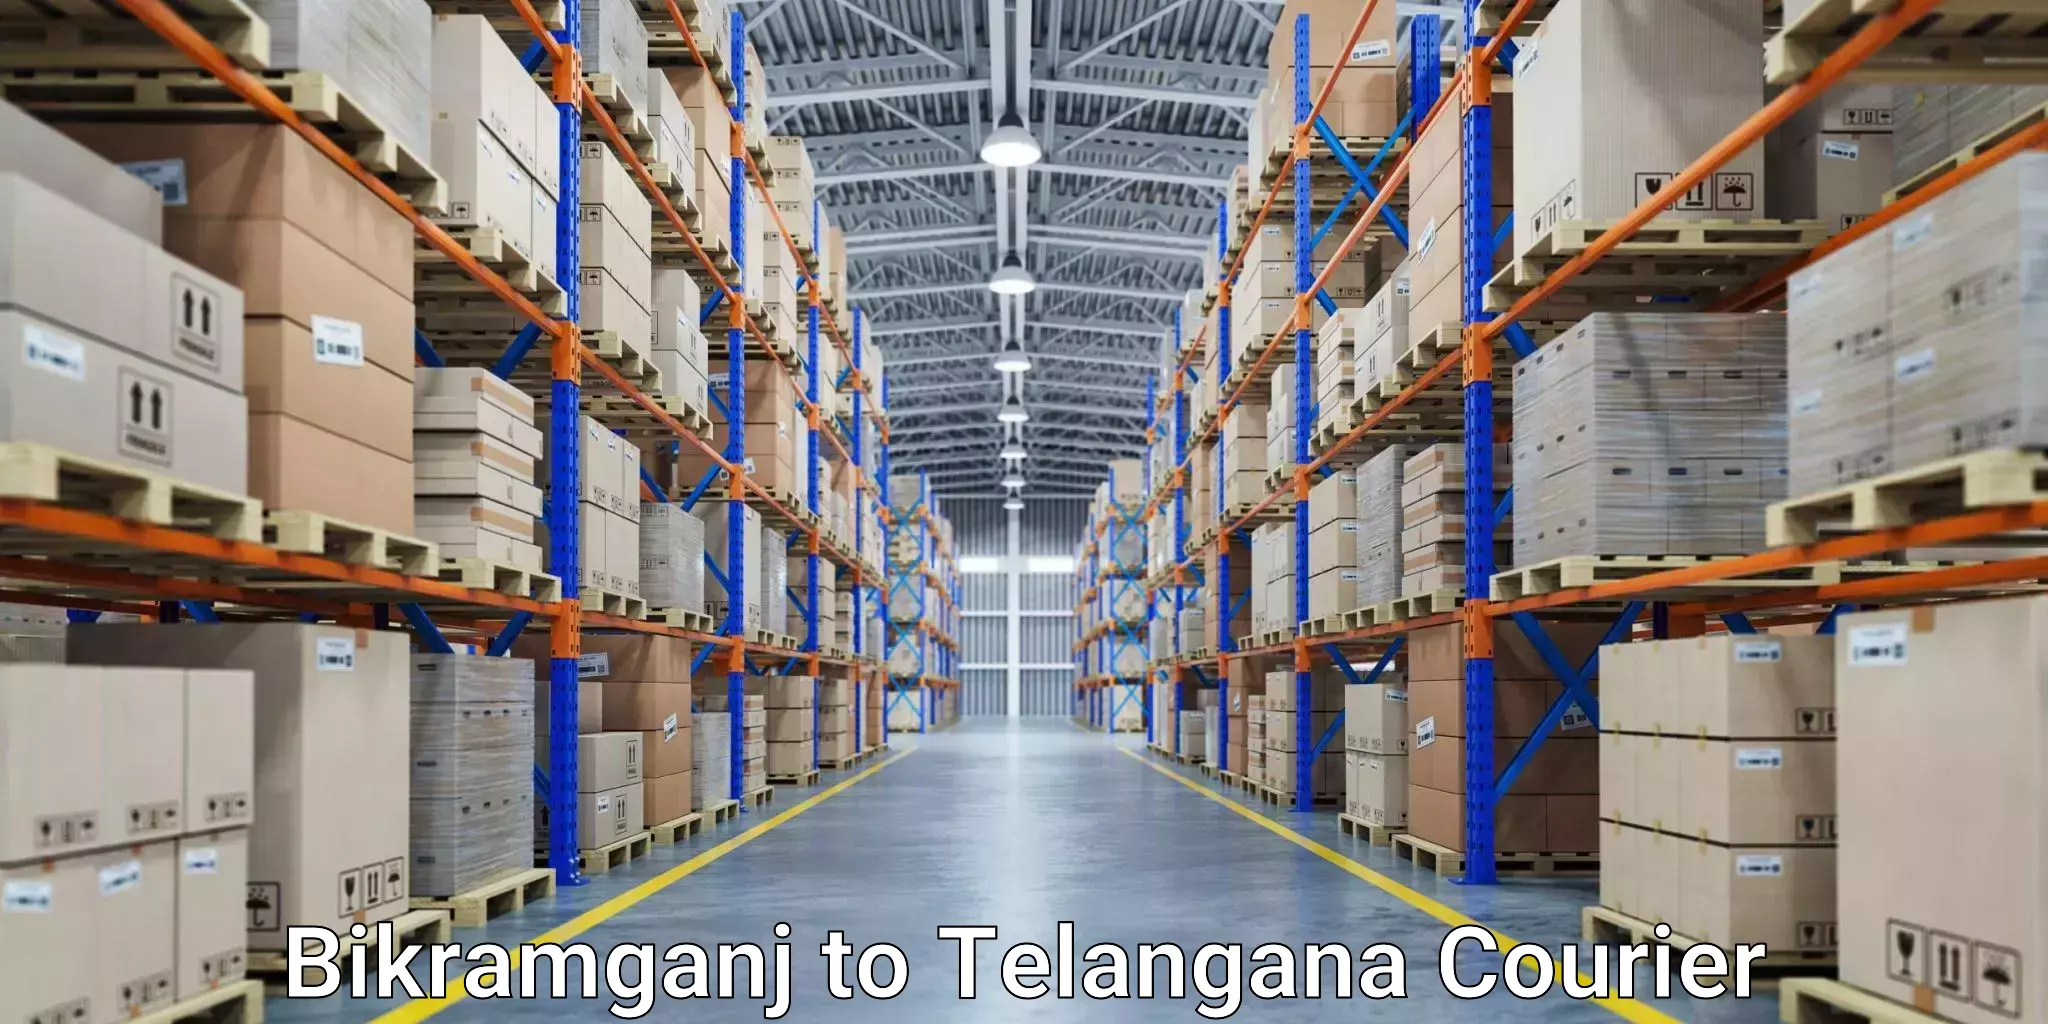 Express courier facilities Bikramganj to Warangal